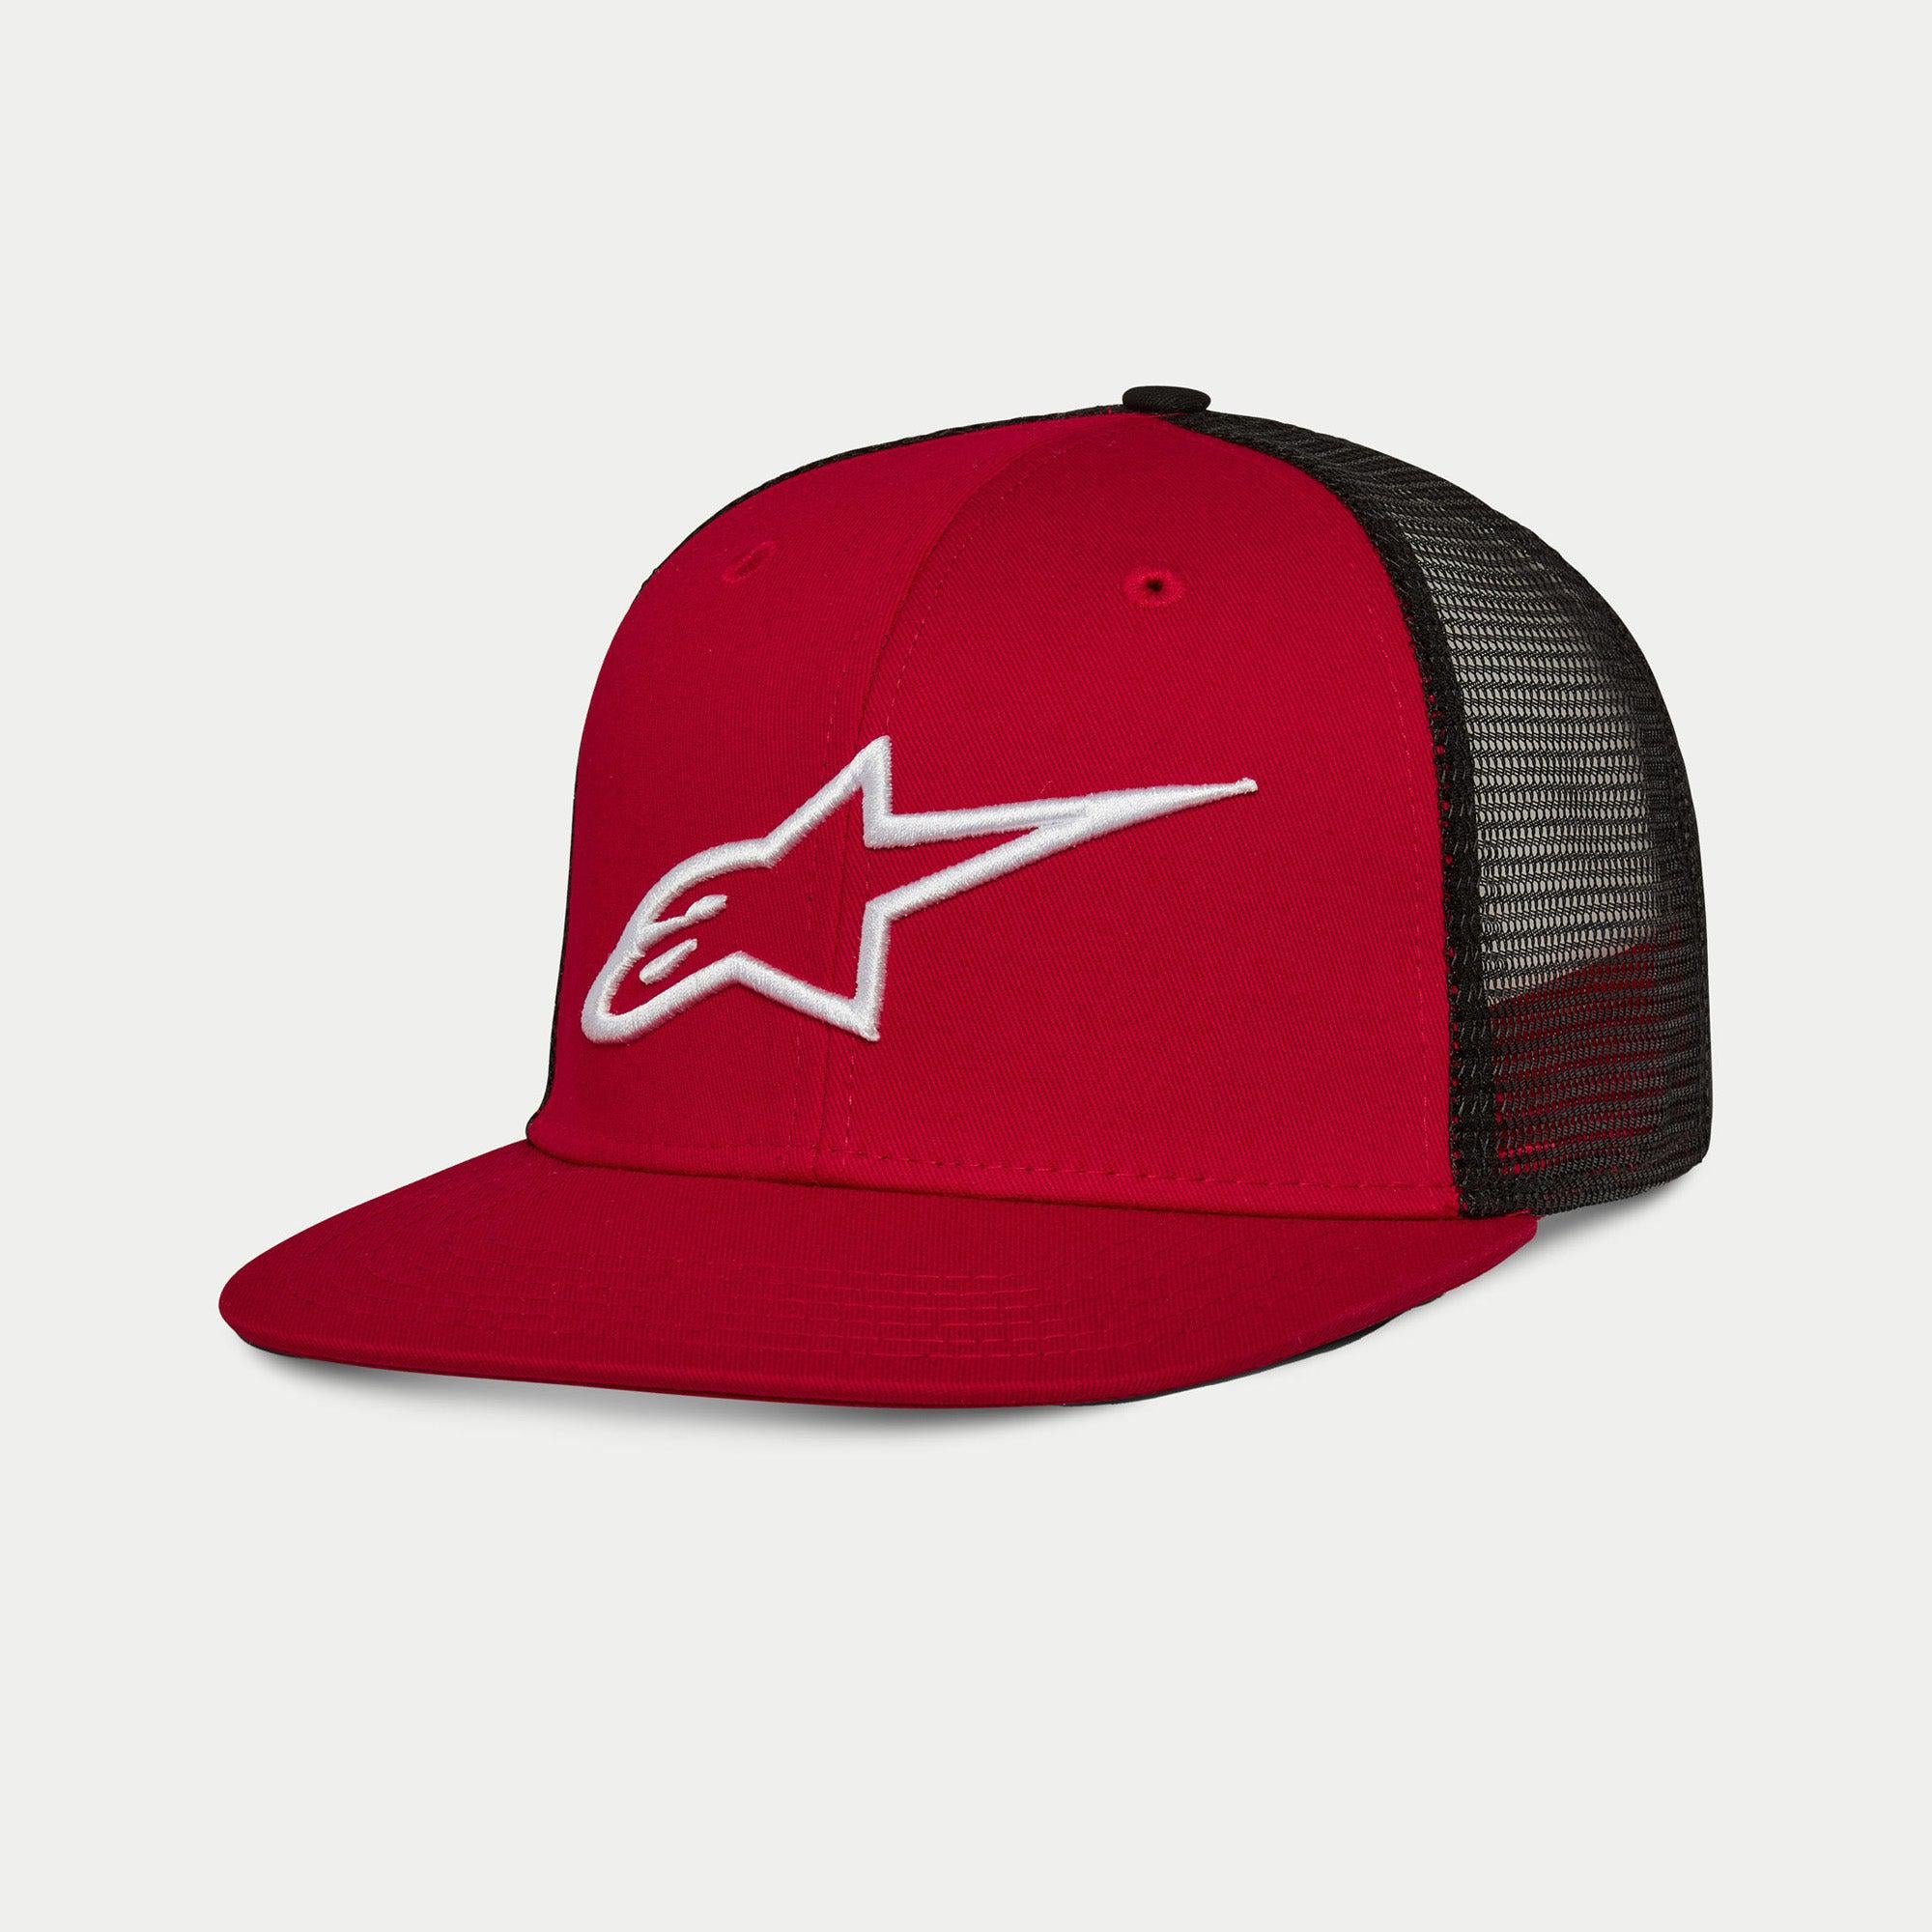 Corp Trucker Hat - Alpinestars